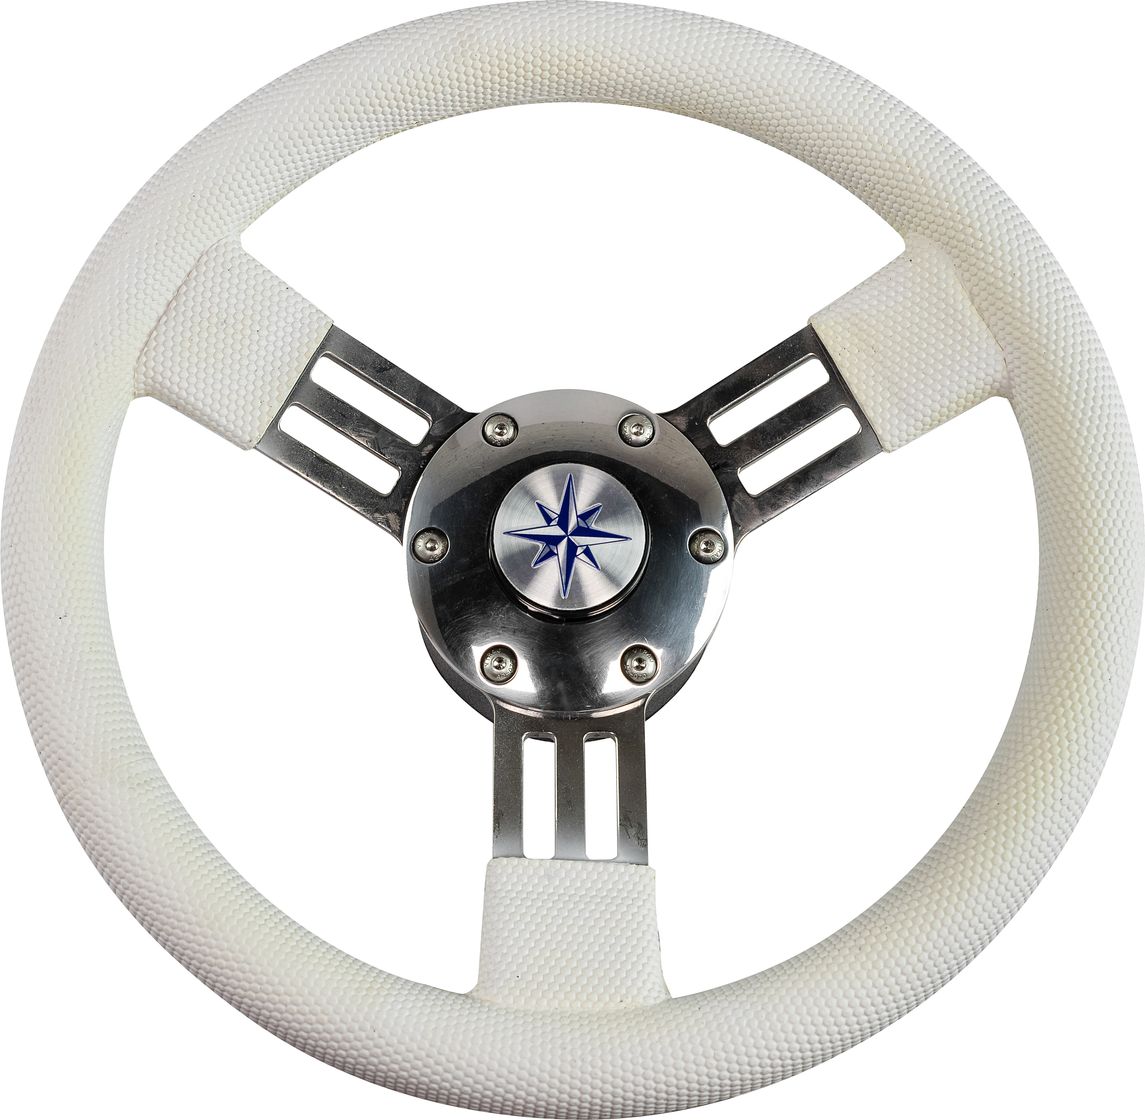 Рулевое колесо PEGASO обод белый, спицы серебряные д. 300 мм VN13327-08 рулевое колесо elba sport обод спицы серебряные д 320 мм vn13321 01